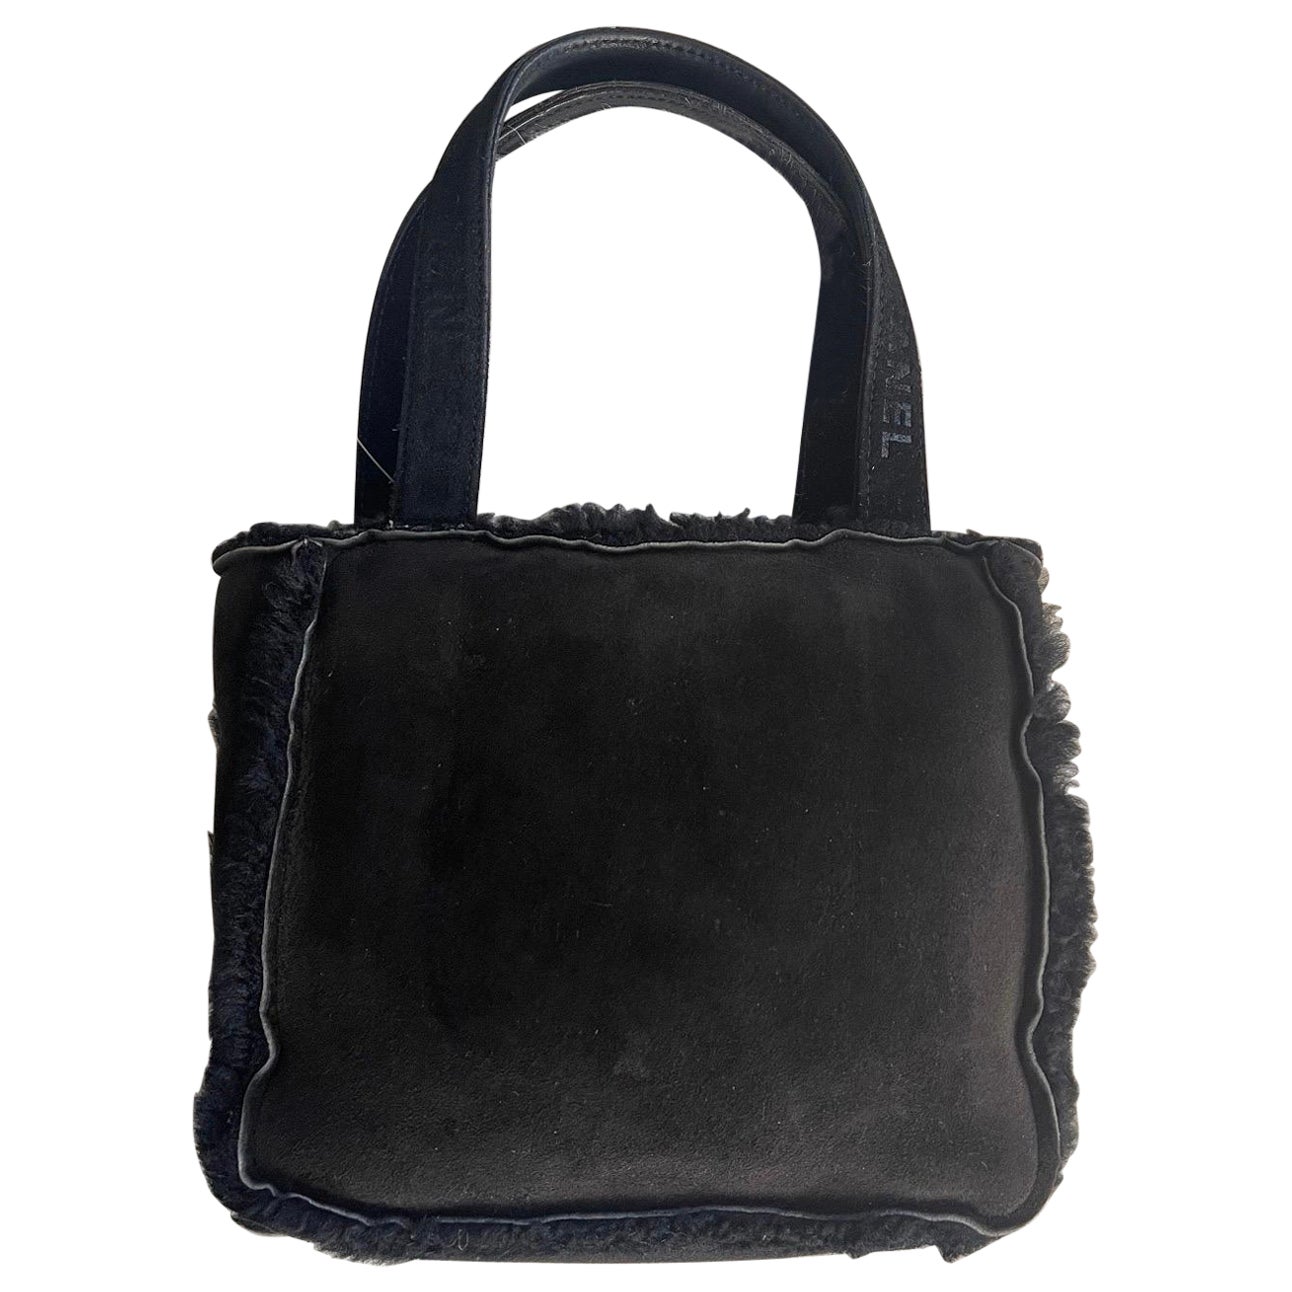 Vintage 90s Chanel Suede with Fur Trim Handbag Top Handle Satchel Flap Bag Purse For Sale